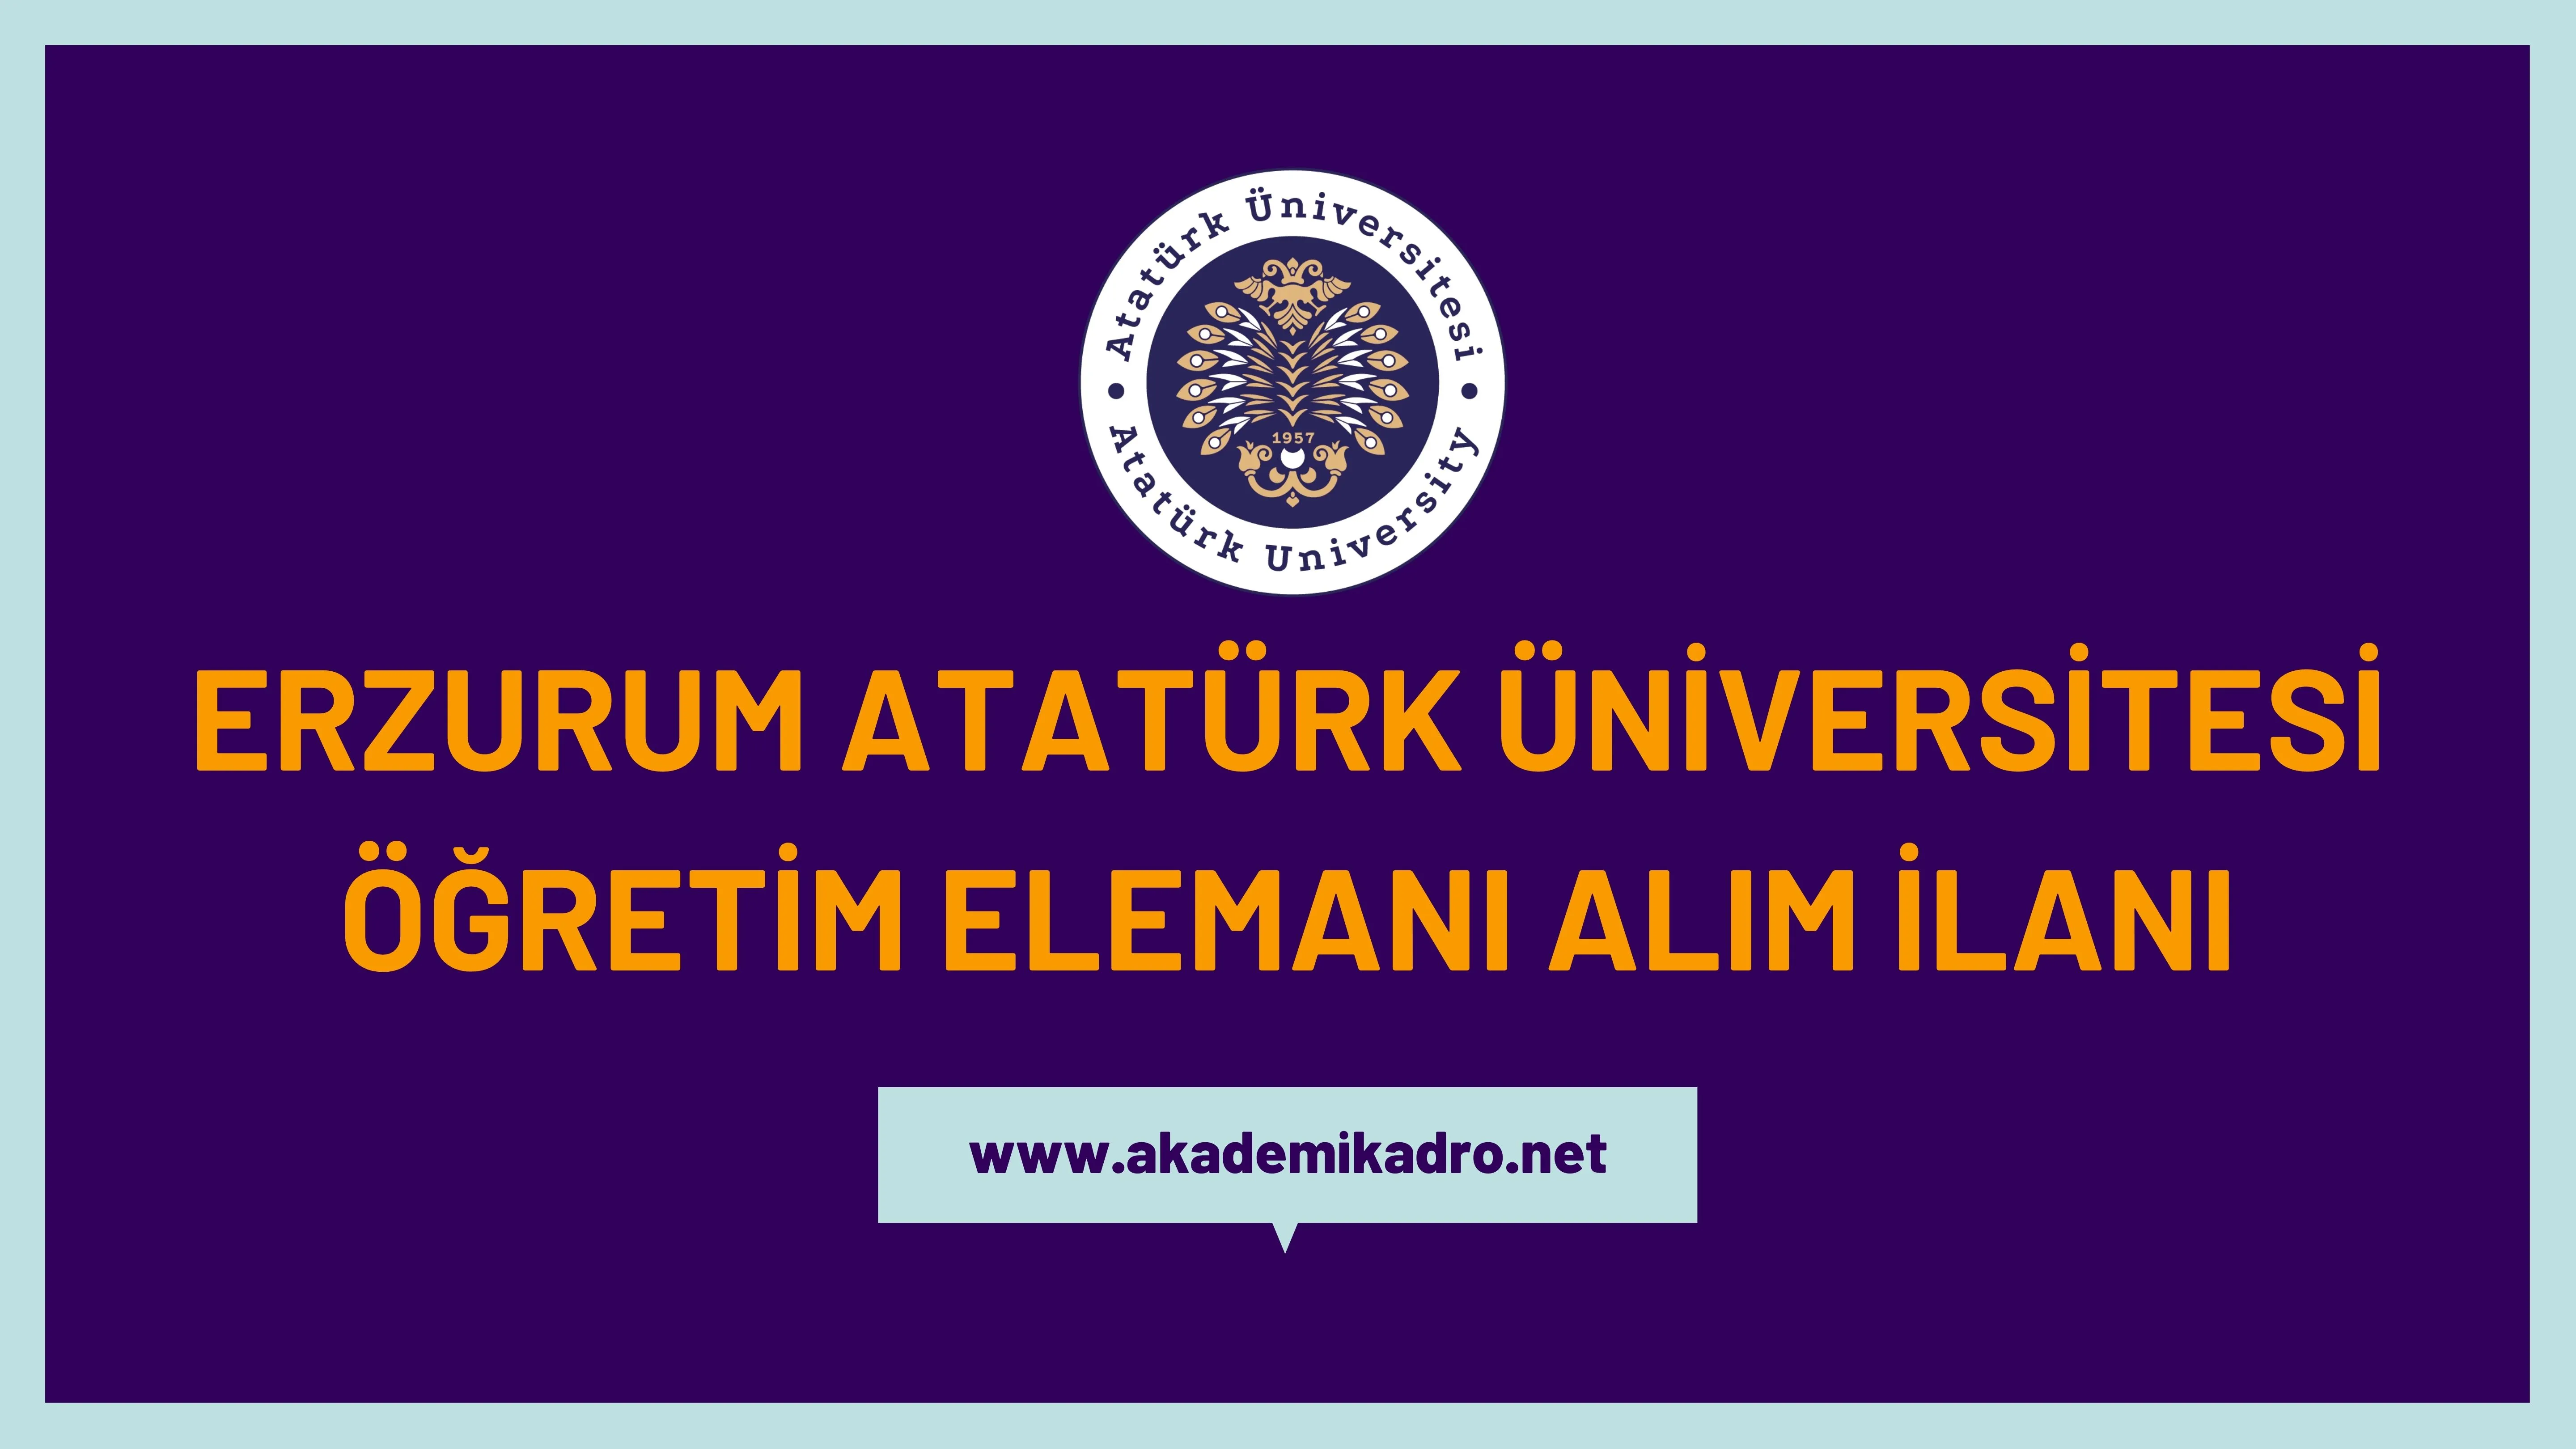 Atatürk Üniversitesi 58 Öğretim üyesi ve 2 Öğretim Görevlisi alacaktır. Son başvuru tarihi 10 Kasım 2022